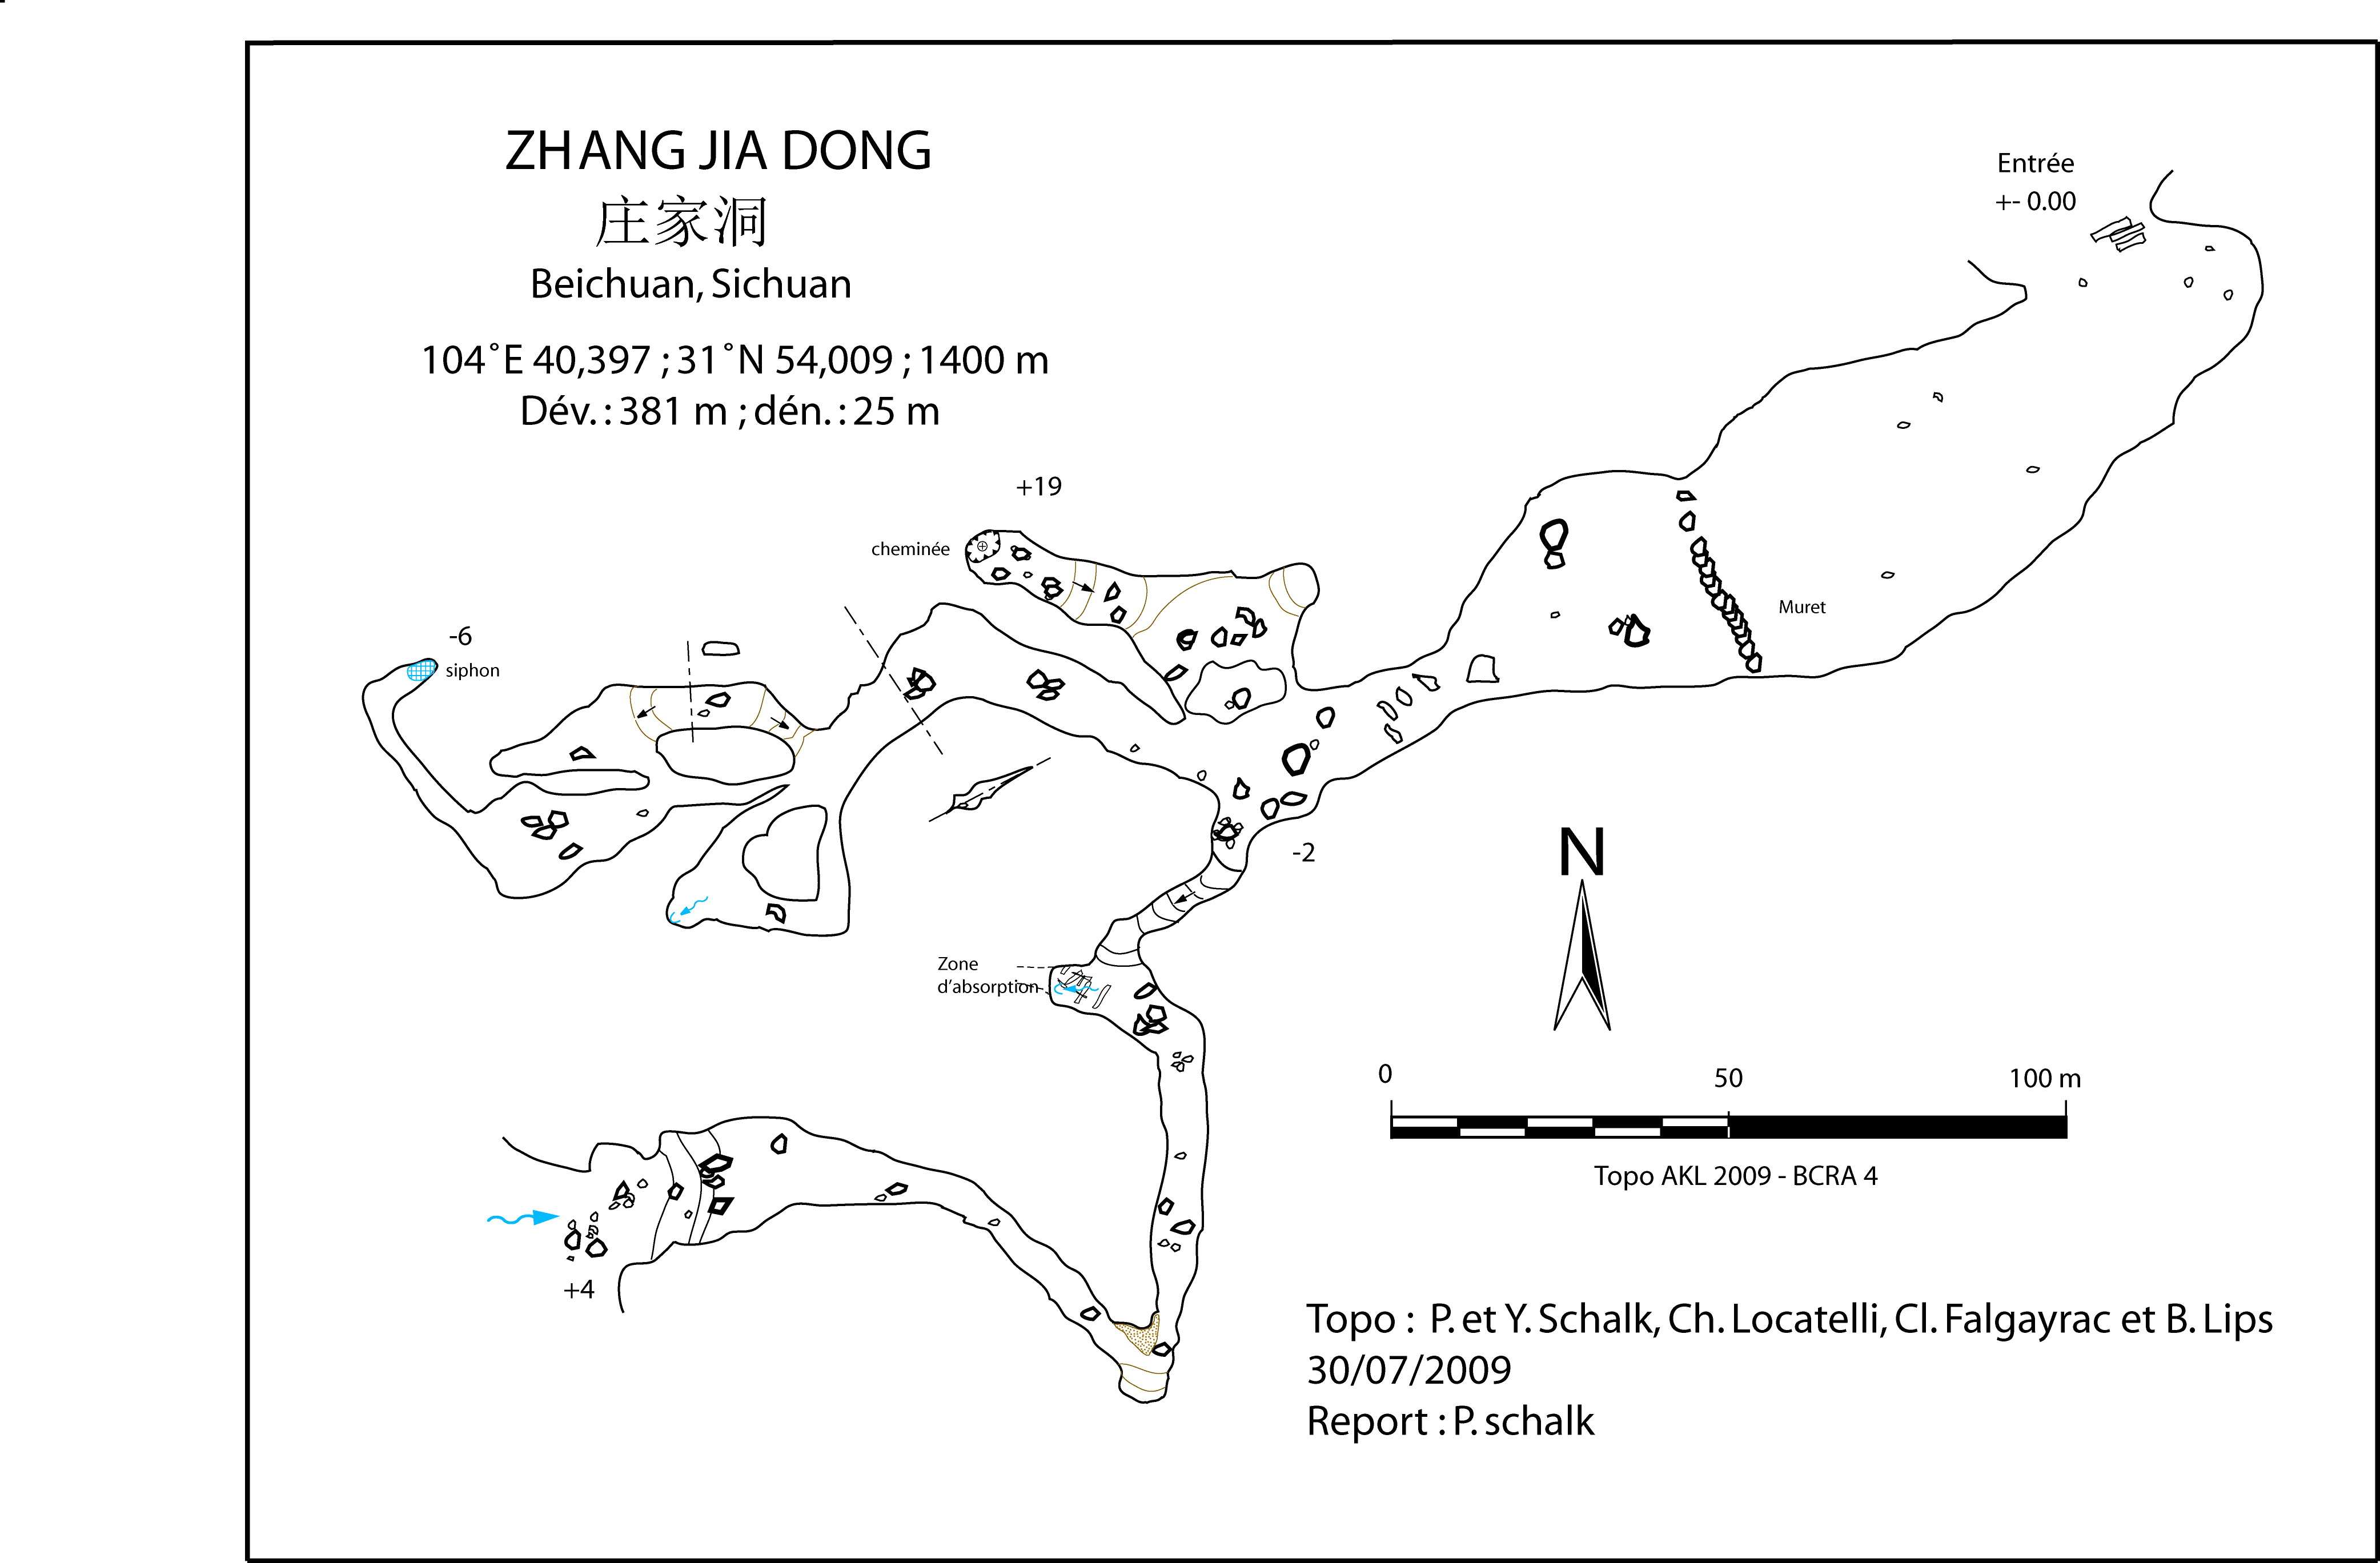 topographie Zhangjiadong 